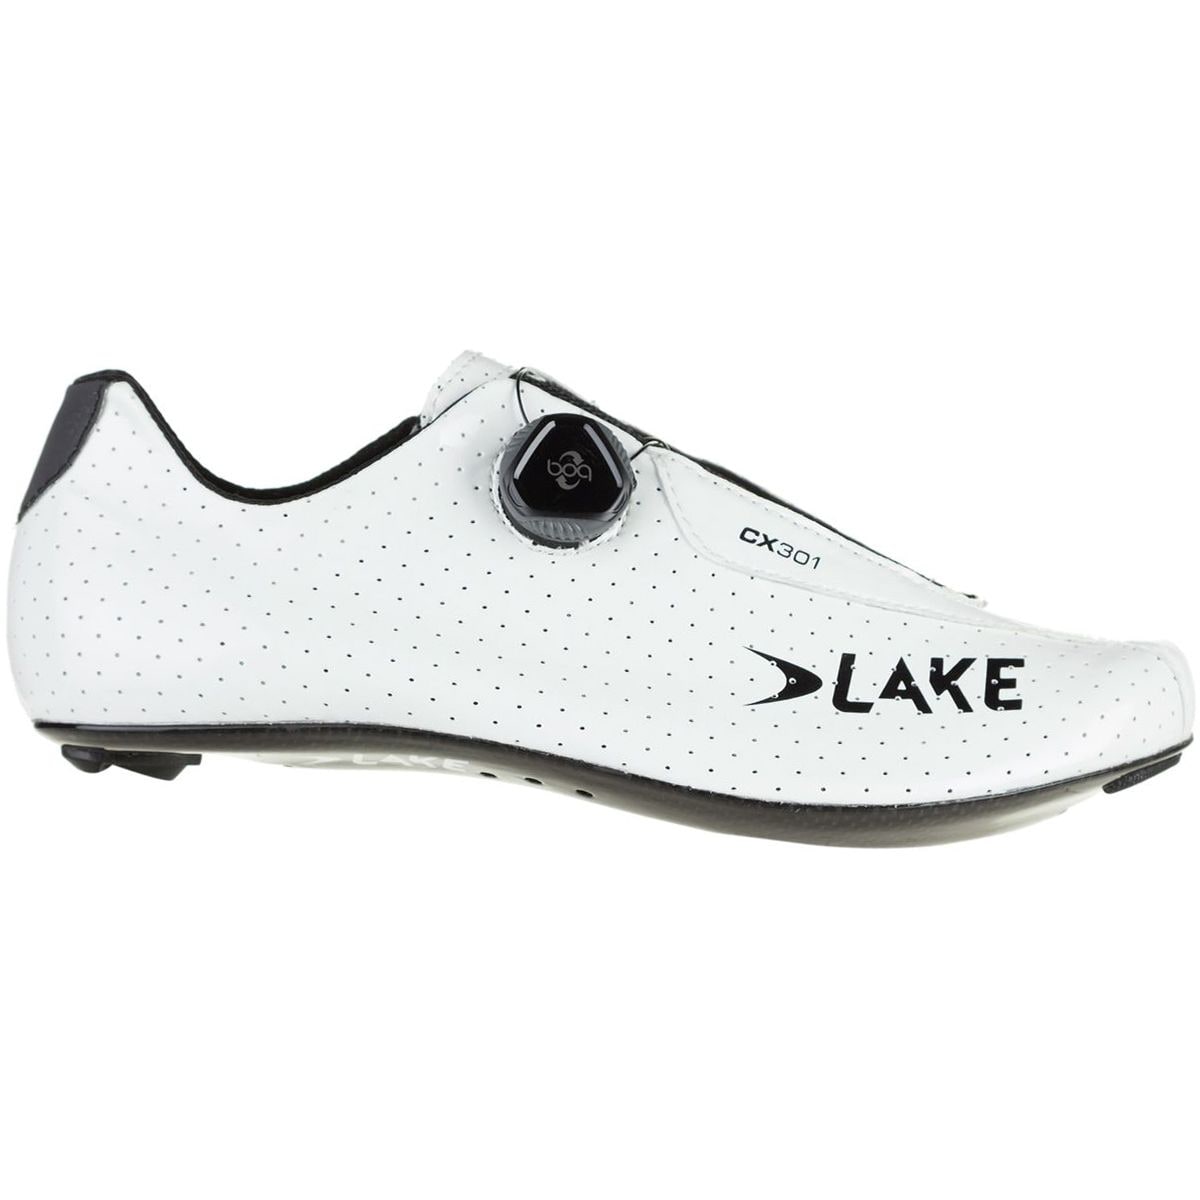 Lake CX301 Cycling Shoe - Men's